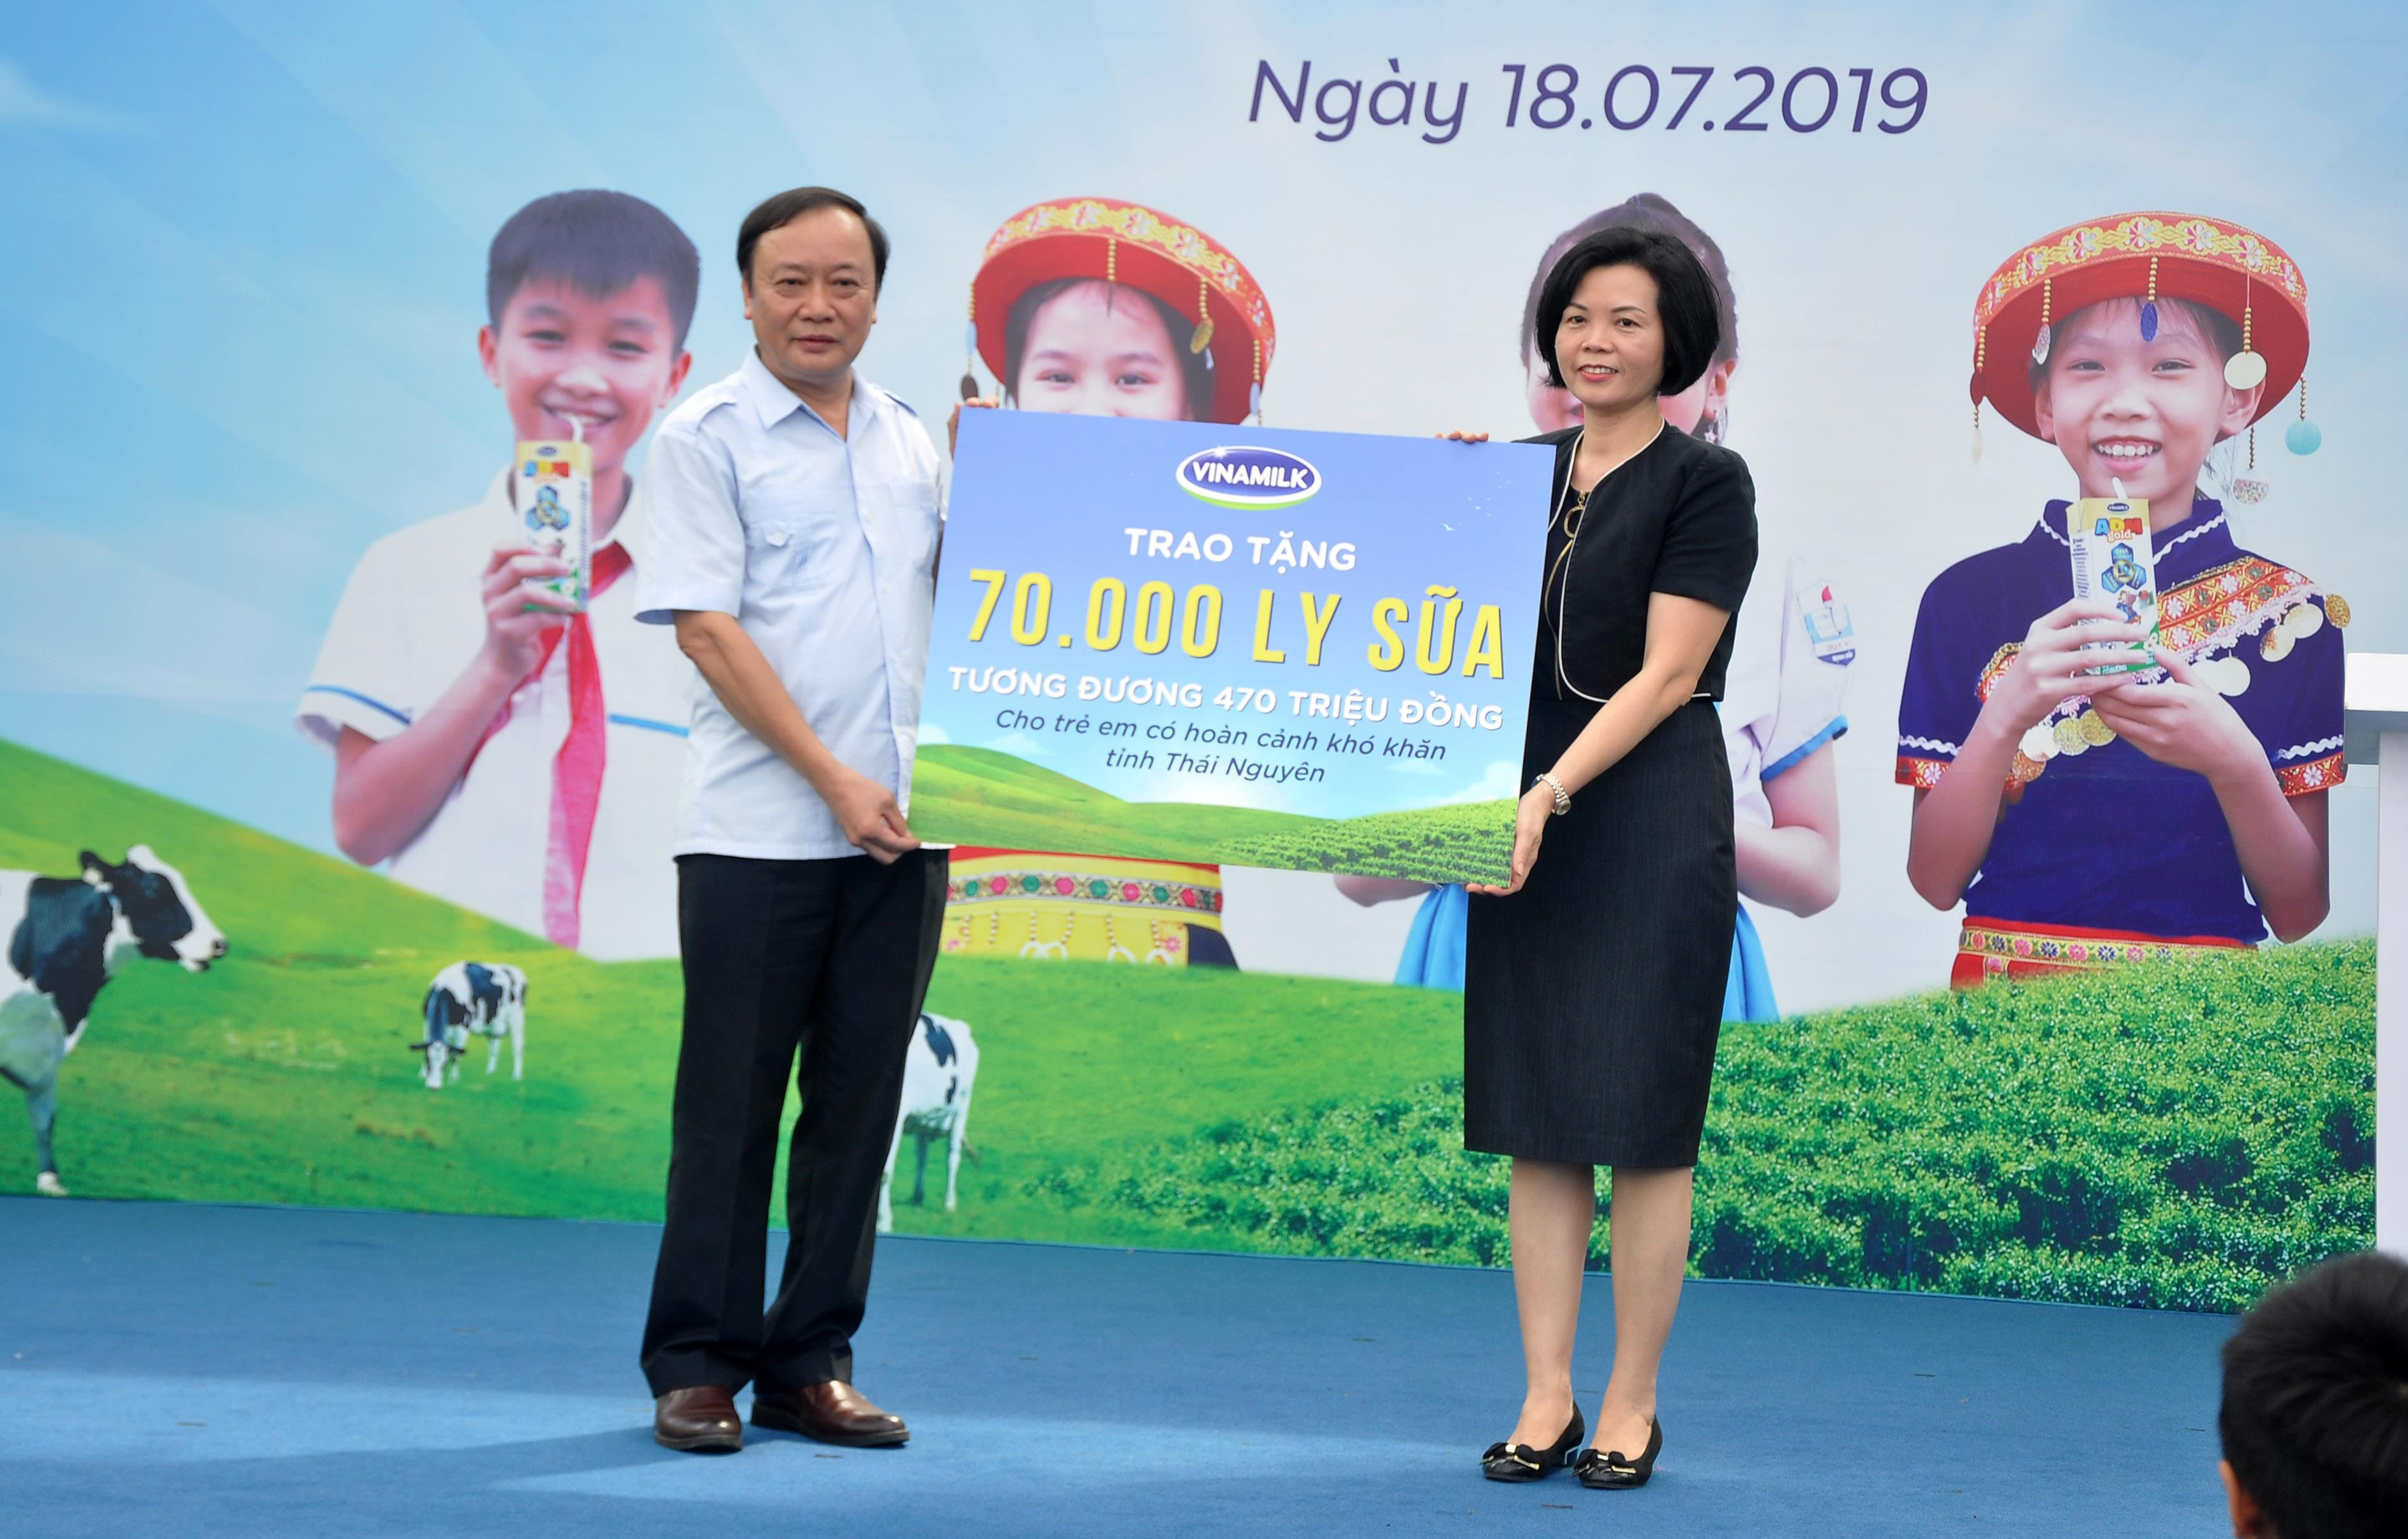 Đại diện Vinamilk trao biển tượng trưng tặng 70.000 ly sữa của chương trình cho tỉnh Thái Nguyên